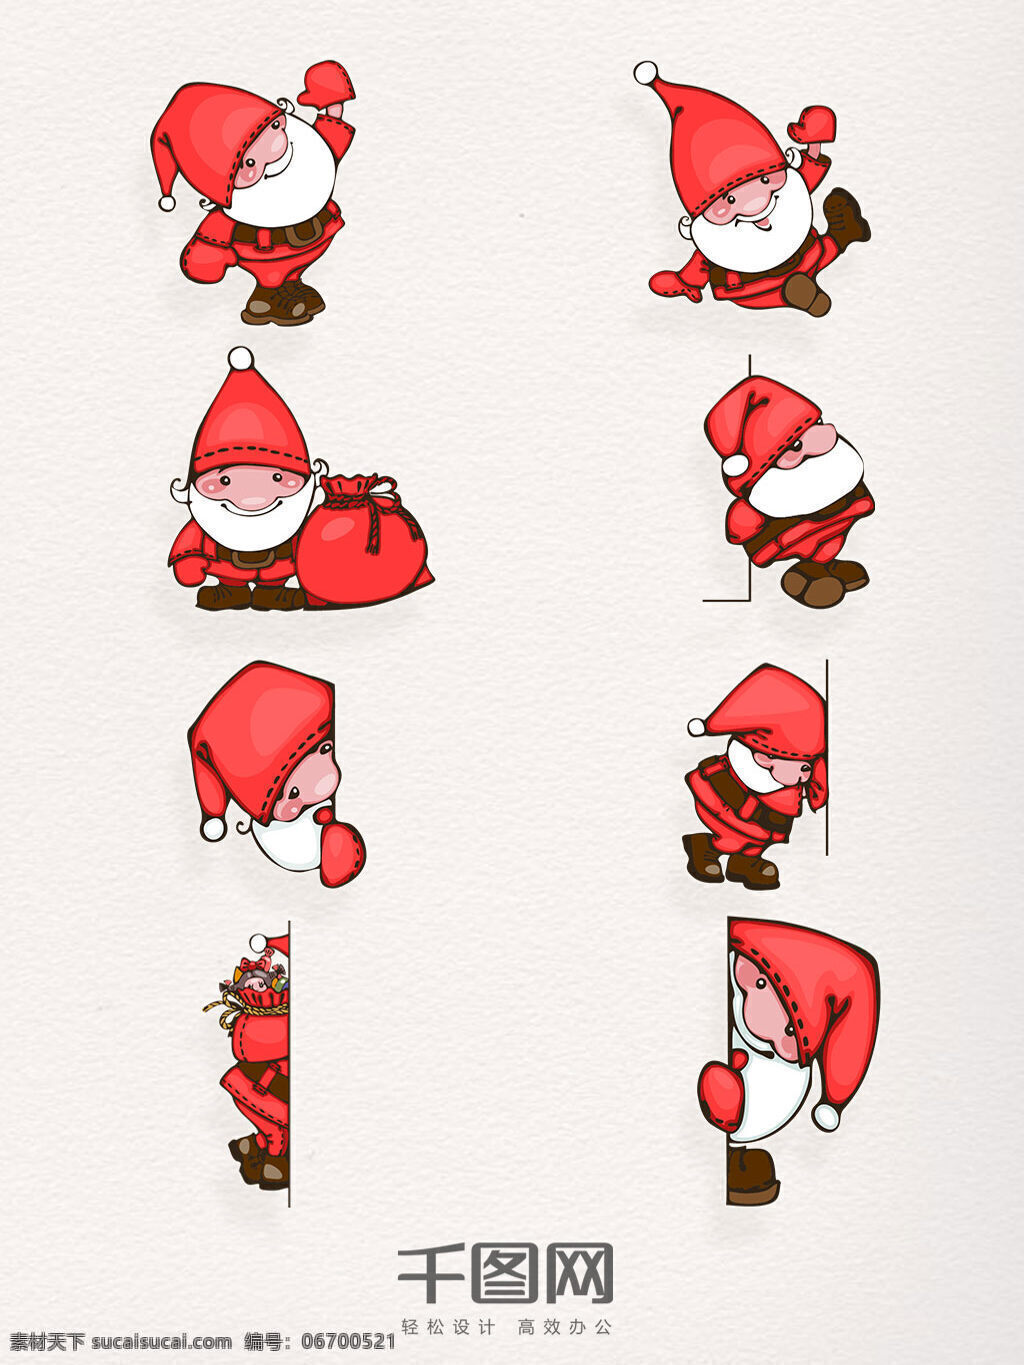 组 手绘 风 可爱 圣诞老人 设计素材 帽子 红色 礼物 圣诞 冬天快乐